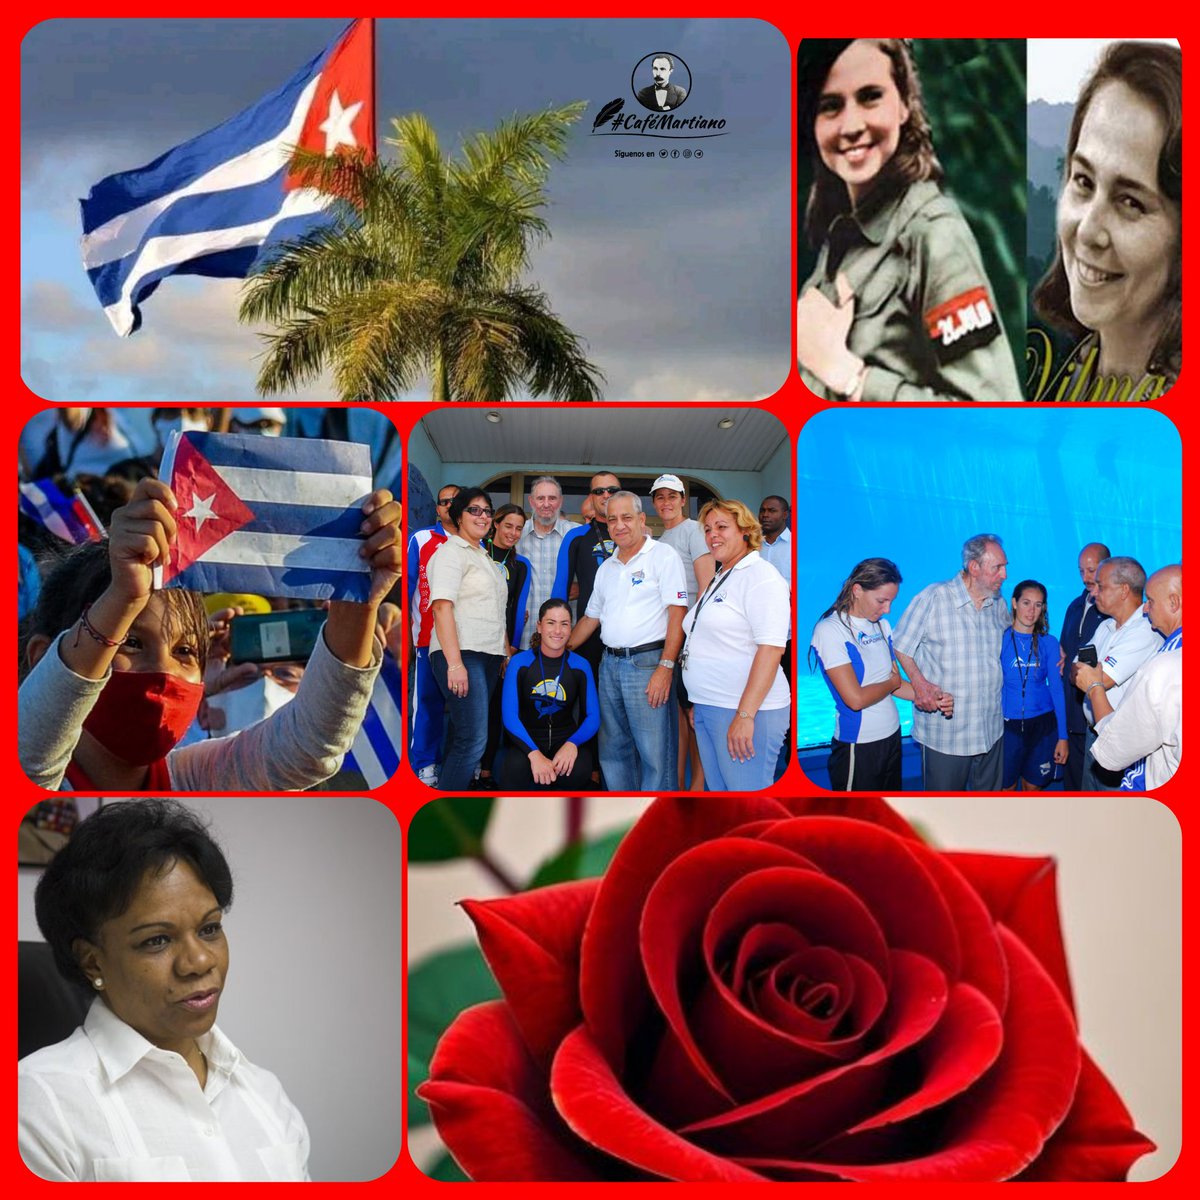 @cafemartiano @DiazCanelB @DrRobertoMOjeda @InesMChapman @TeresaBoue @EVilluendasC @IzquierdaUnid15 @agnes_becerra @mimovilespatria @DeZurdaTeam_ @ValoresTeam1 Buenos días #CaféMartiano cómo dijo Fidel: 'La Revolución ha significado mucho para la mujer cubana. Y dentro de la Revolución, la dirección revolucionaria se esfuerza por abrir más y más oportunidades a la mujer'. #CubaEsAmor